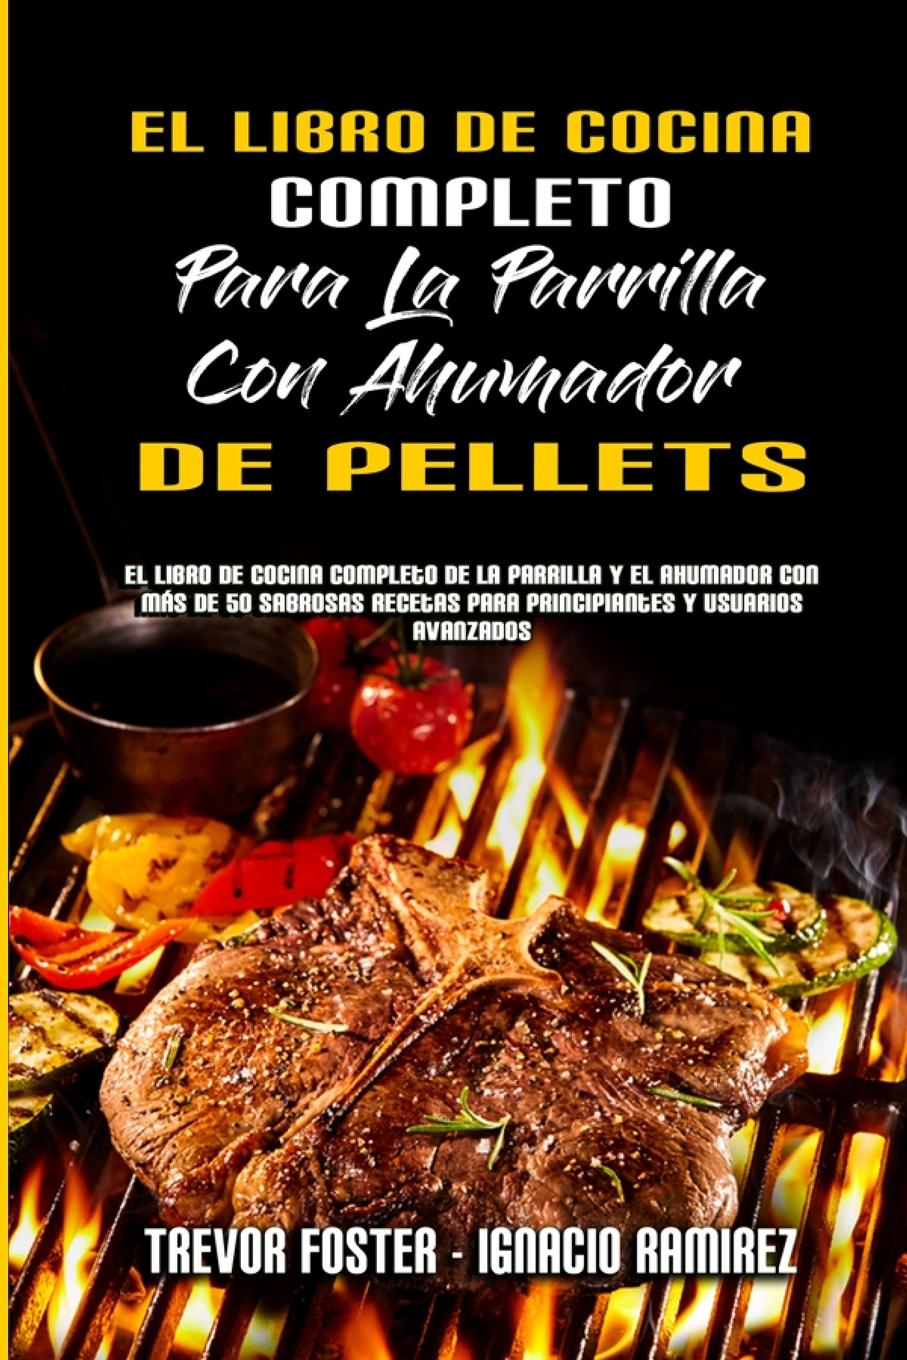 Книга Libro De Cocina Completo Para La Parrilla Con Ahumador De Pellets Ignacio Ramirez